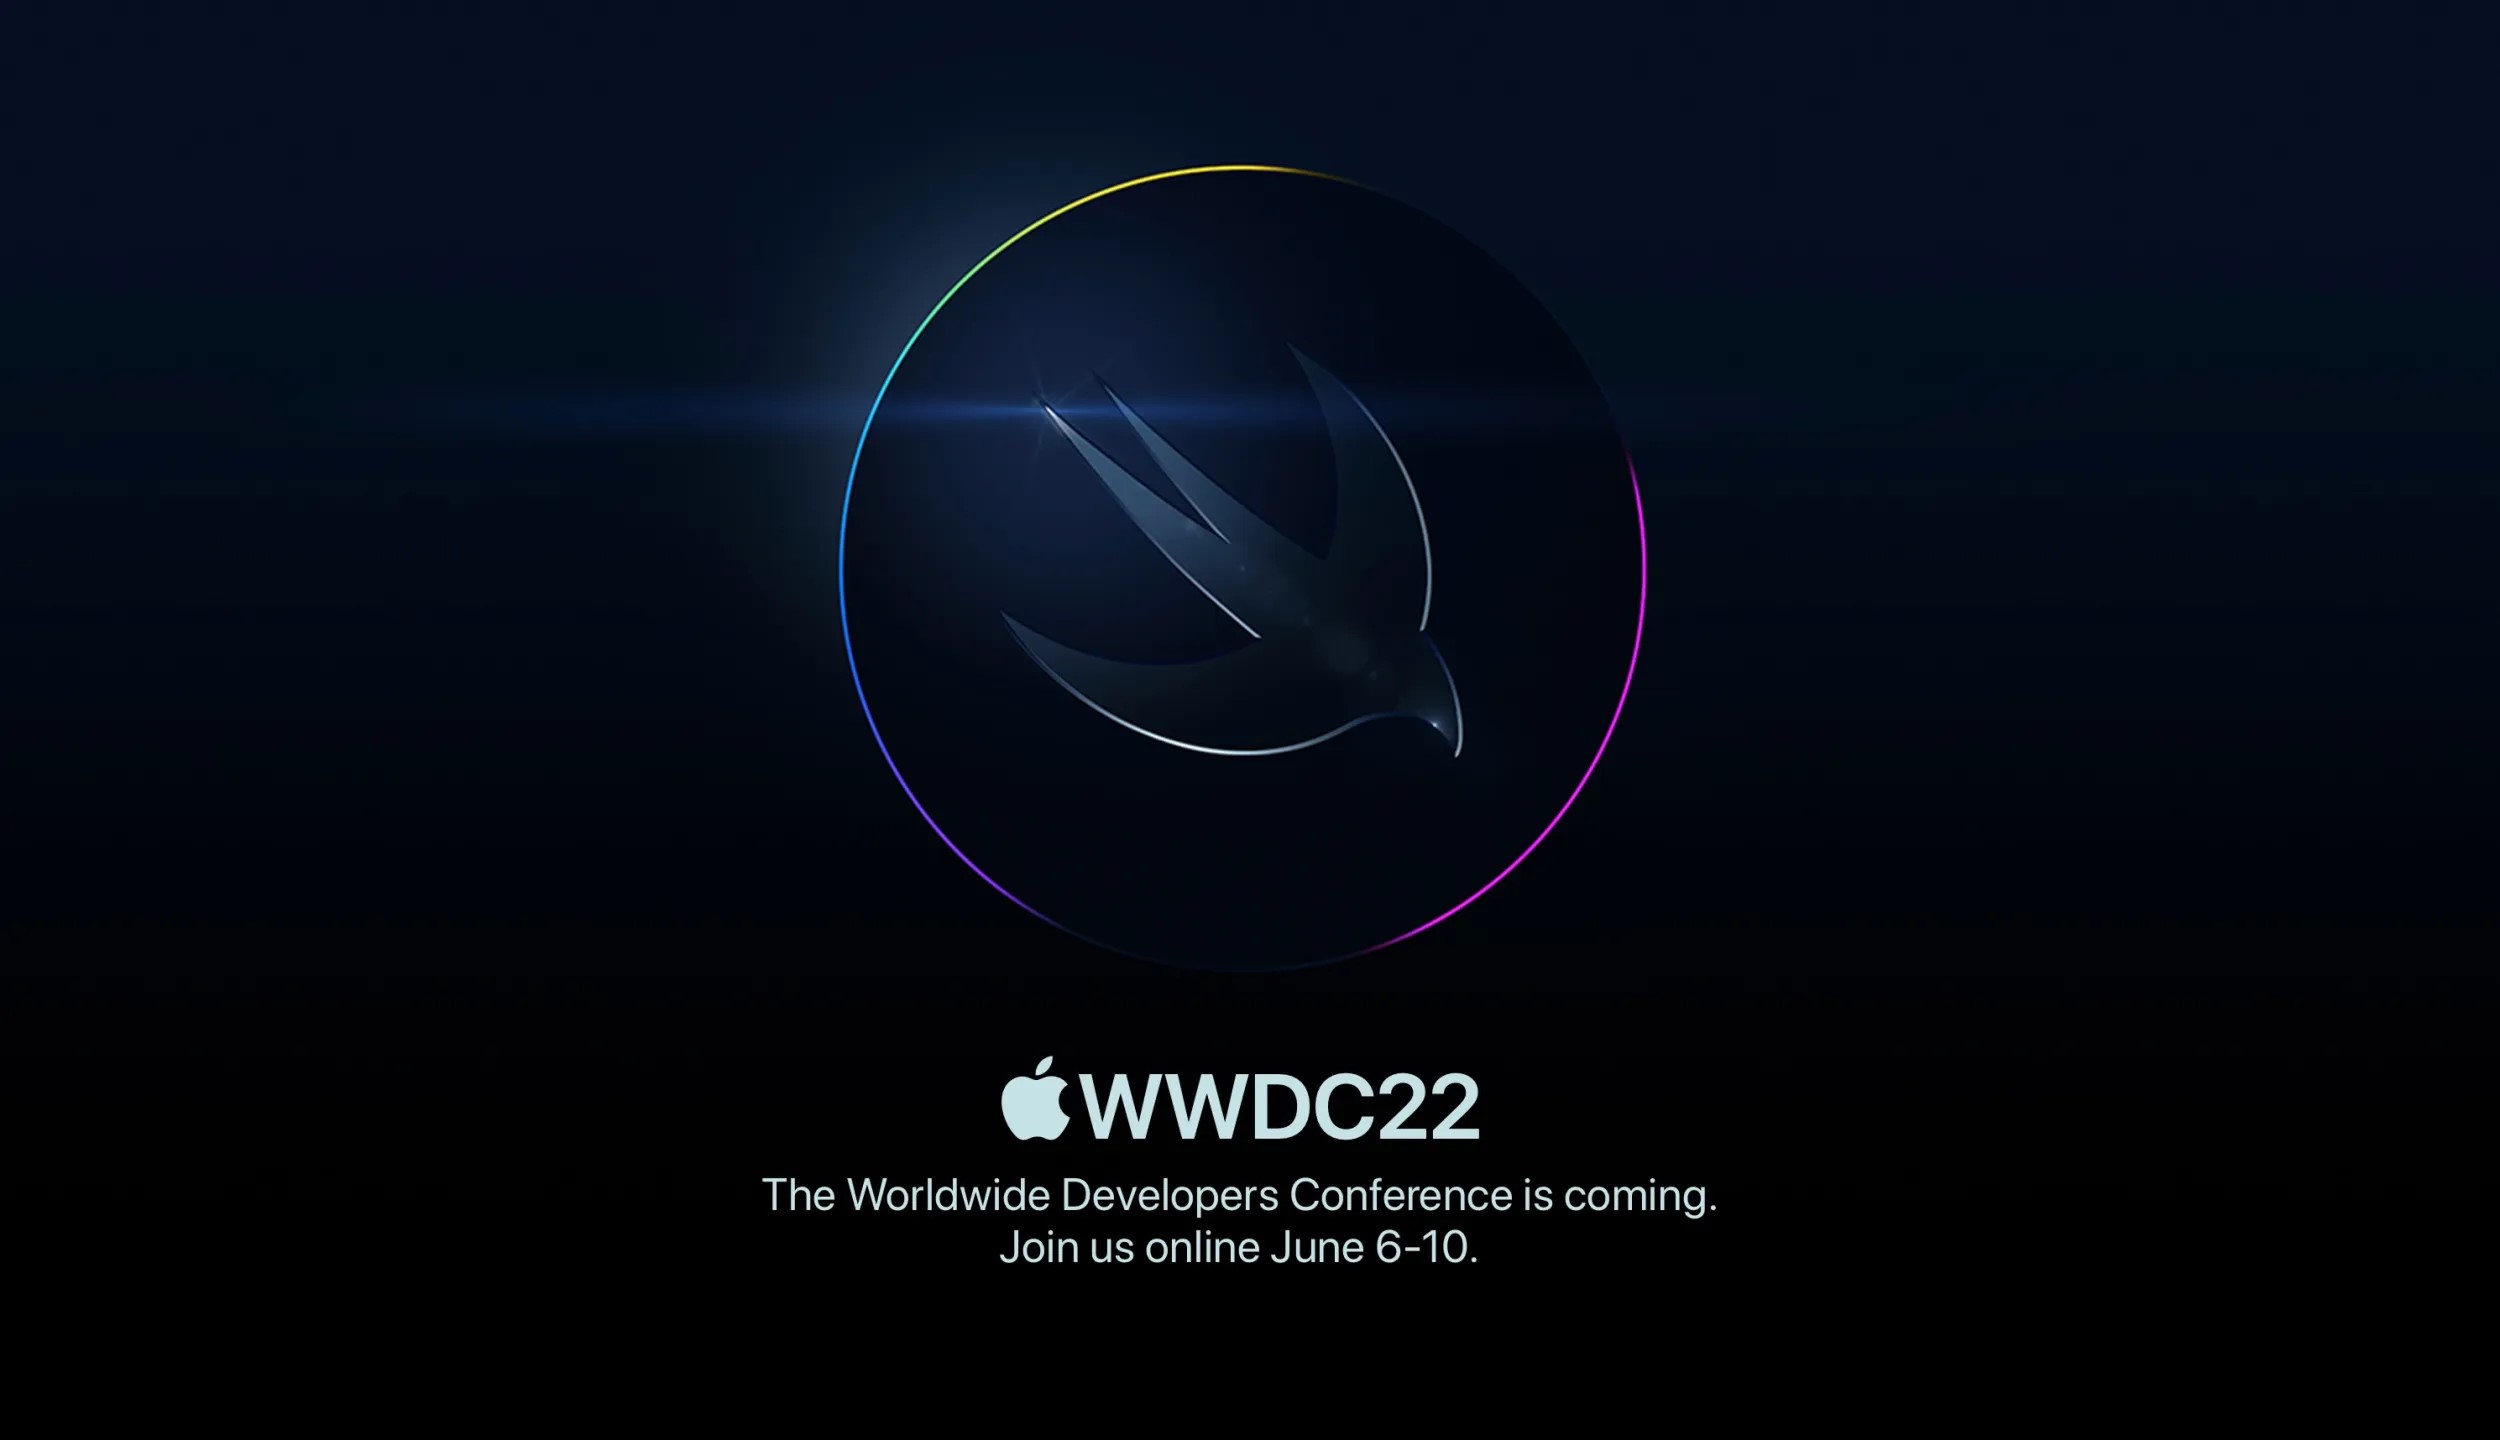 WWDC22